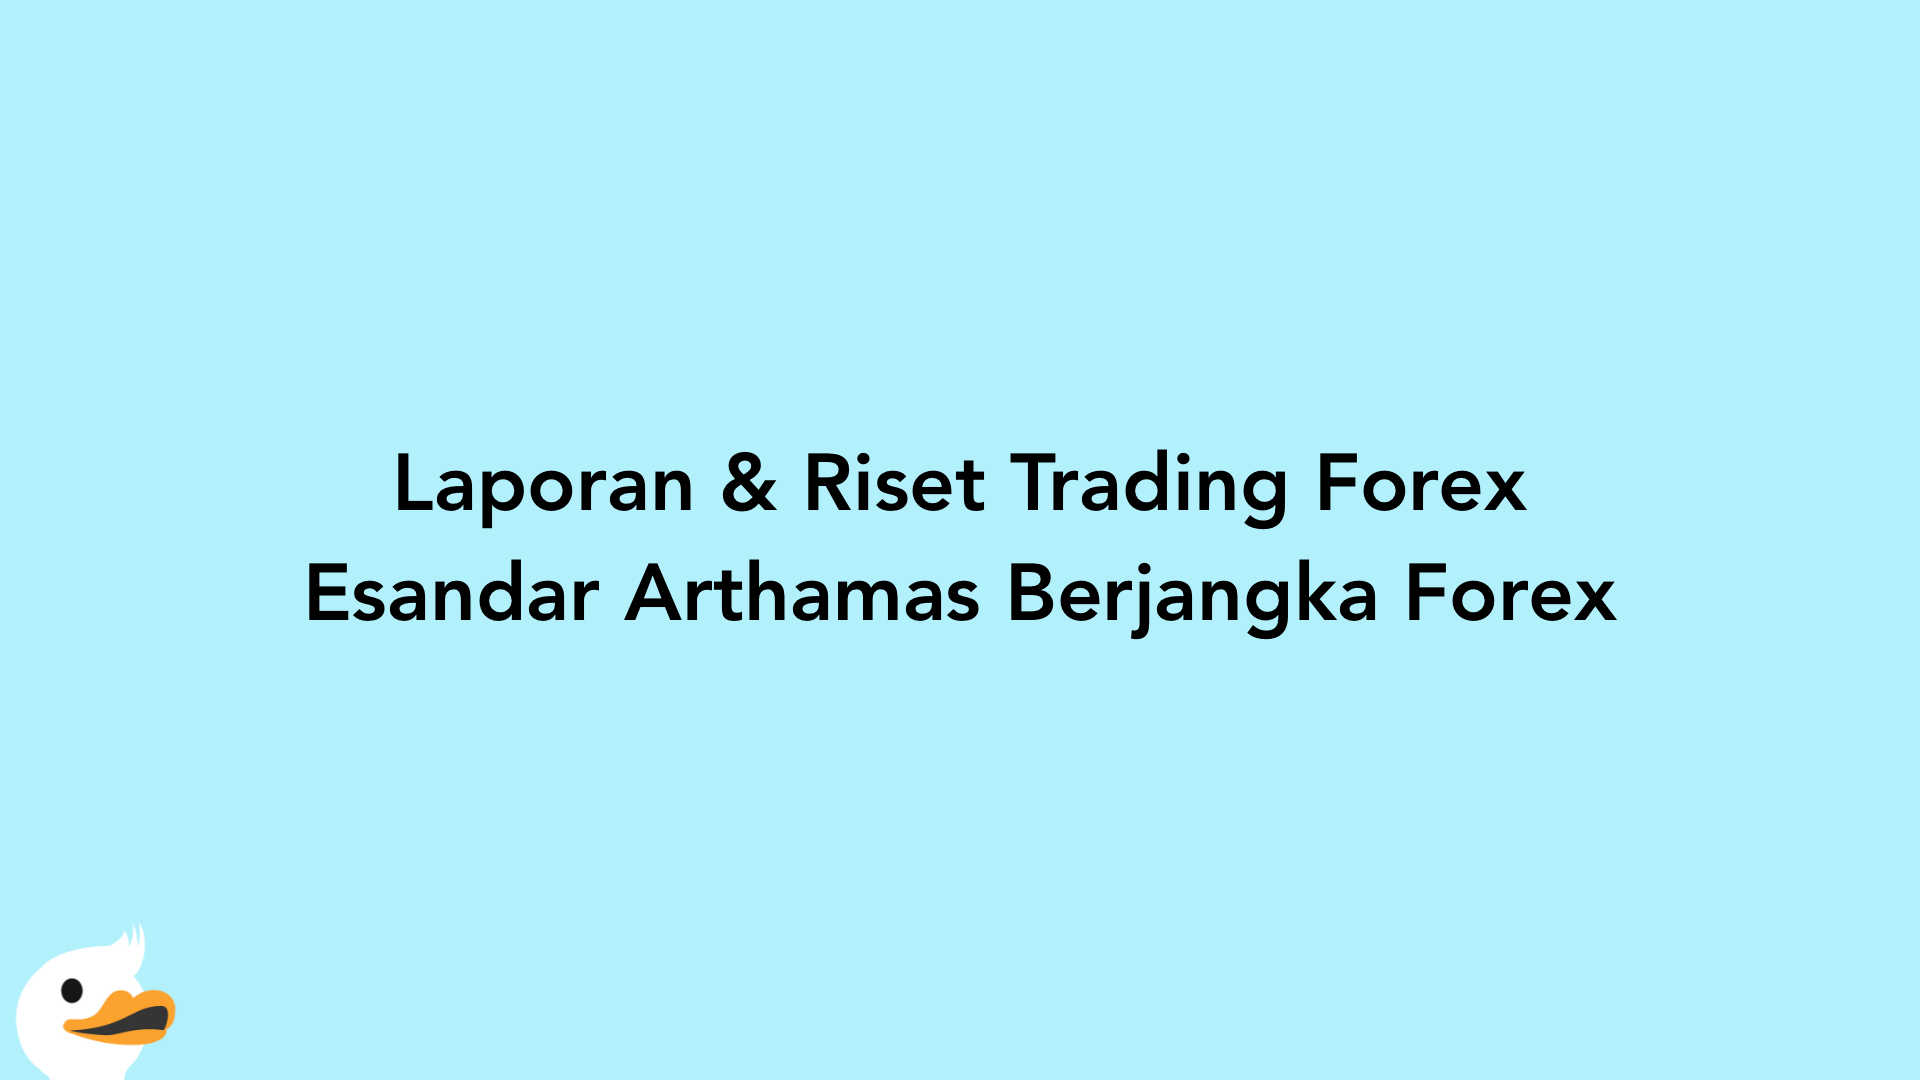 Laporan & Riset Trading Forex Esandar Arthamas Berjangka Forex